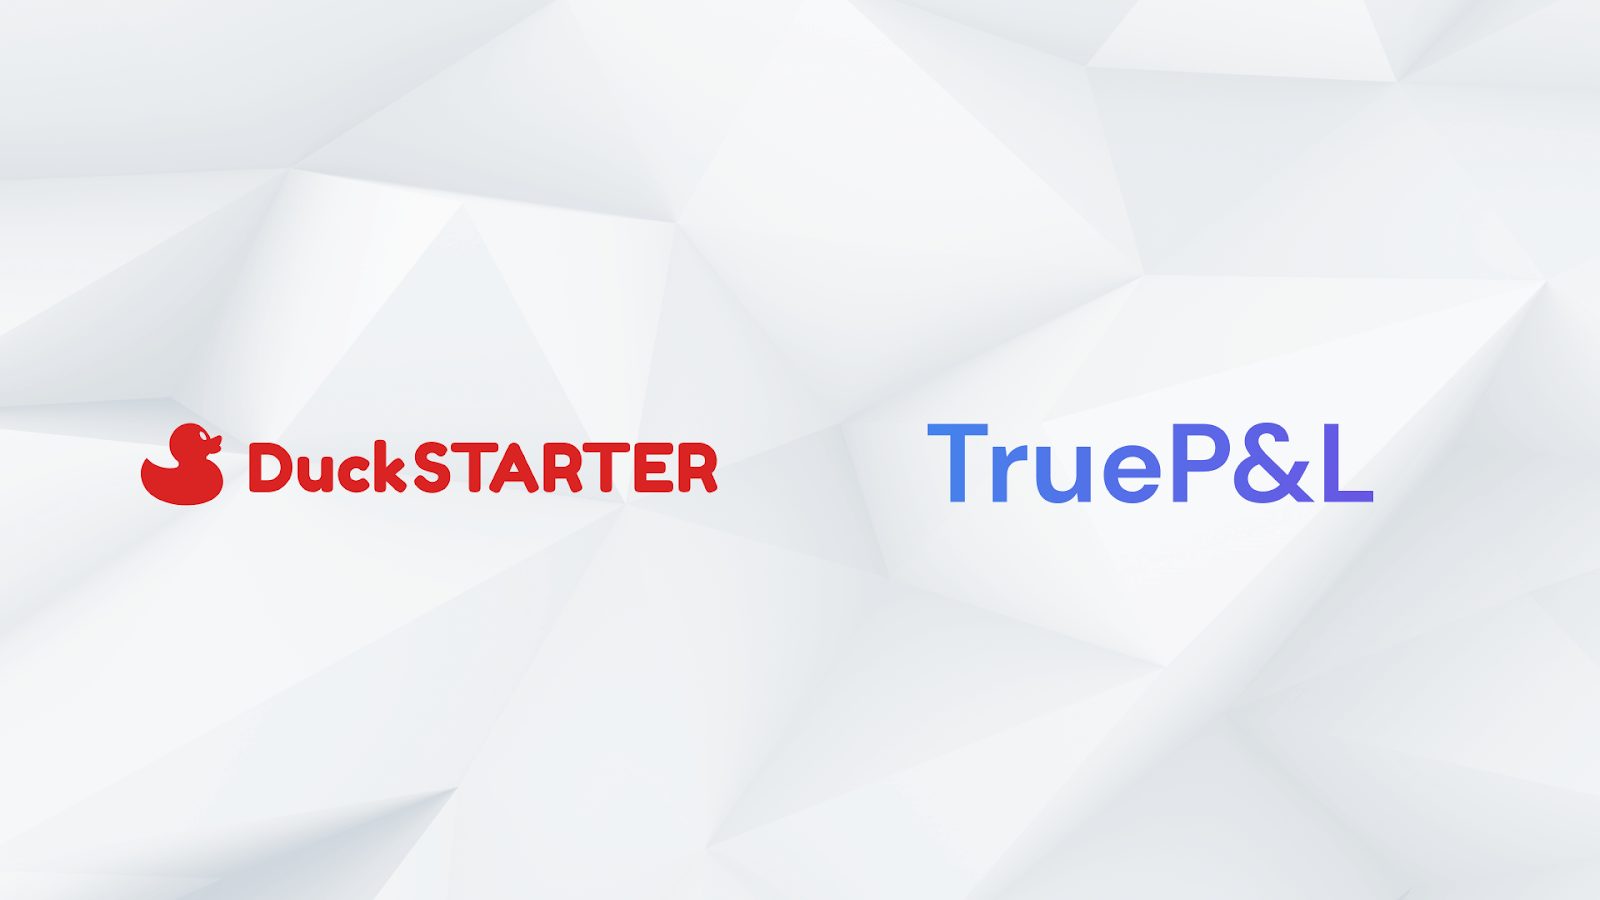 TrueP&L is Coming to DuckSTARTER